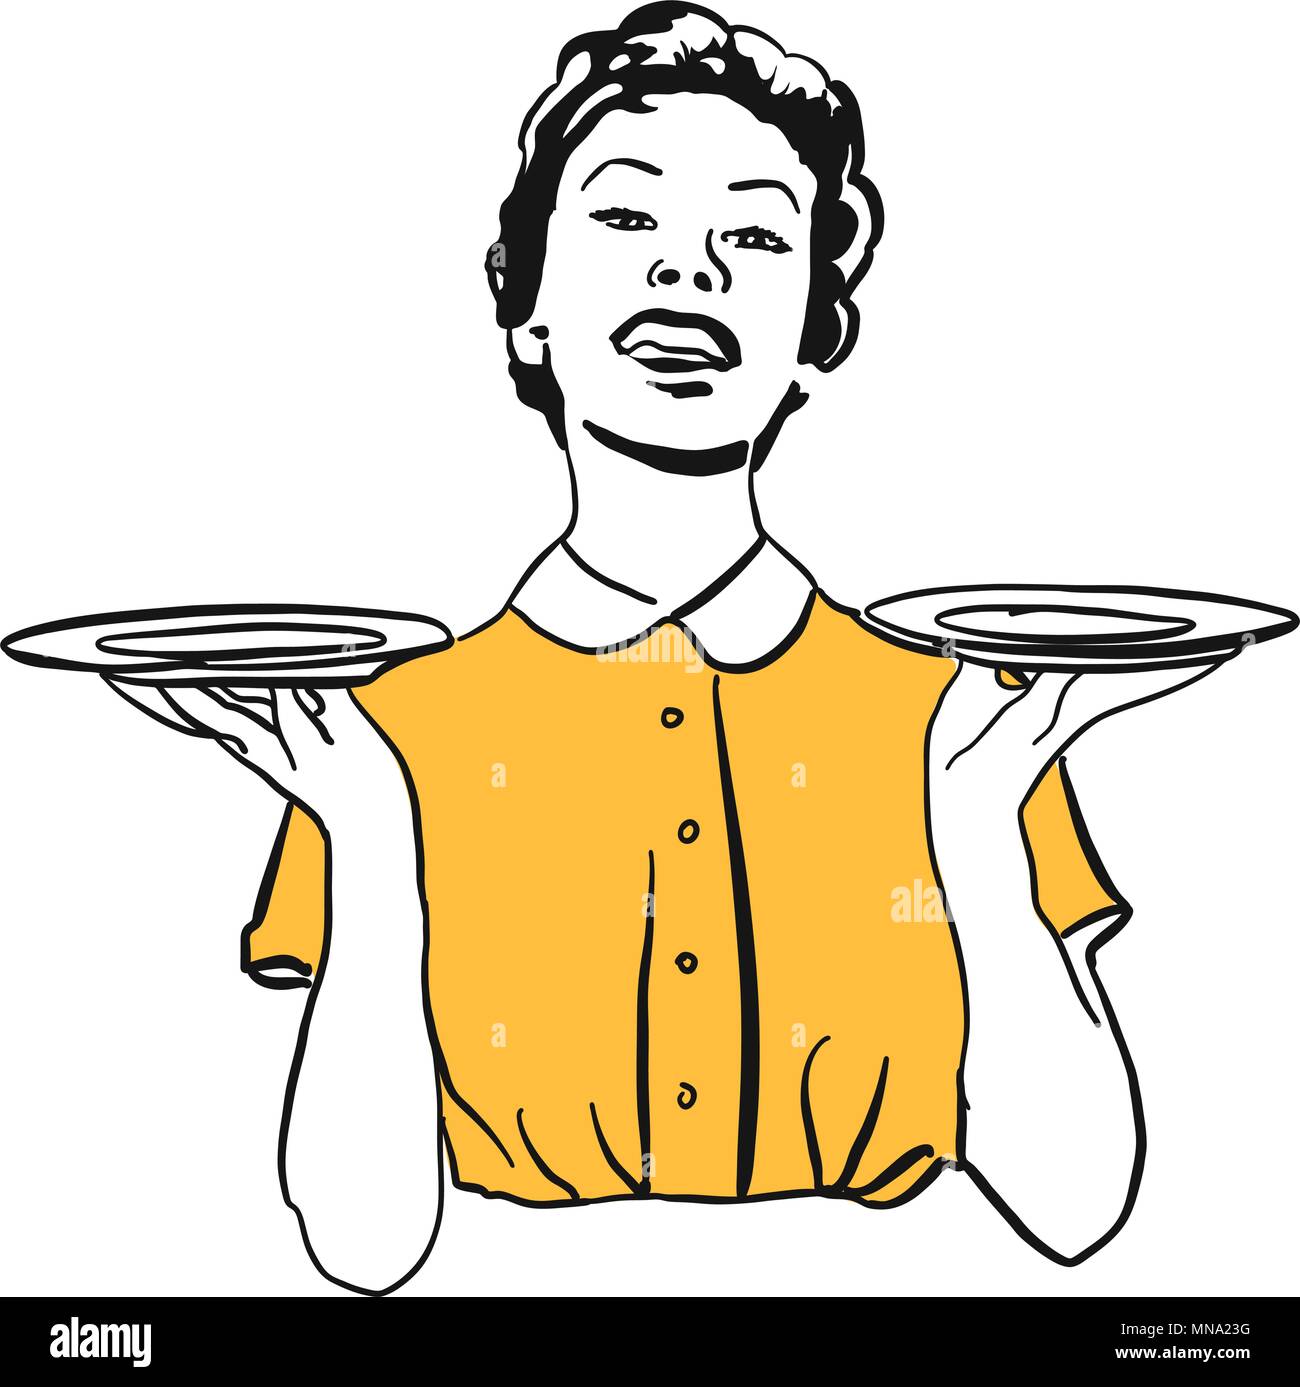 Vintage Hausfrau oder Kellnerin balance leere Teller, Lebensmittel oder andere Produkte. Hand gezeichneten Artwork für jede Art der Werbung im Web ans als Pr Stock Vektor